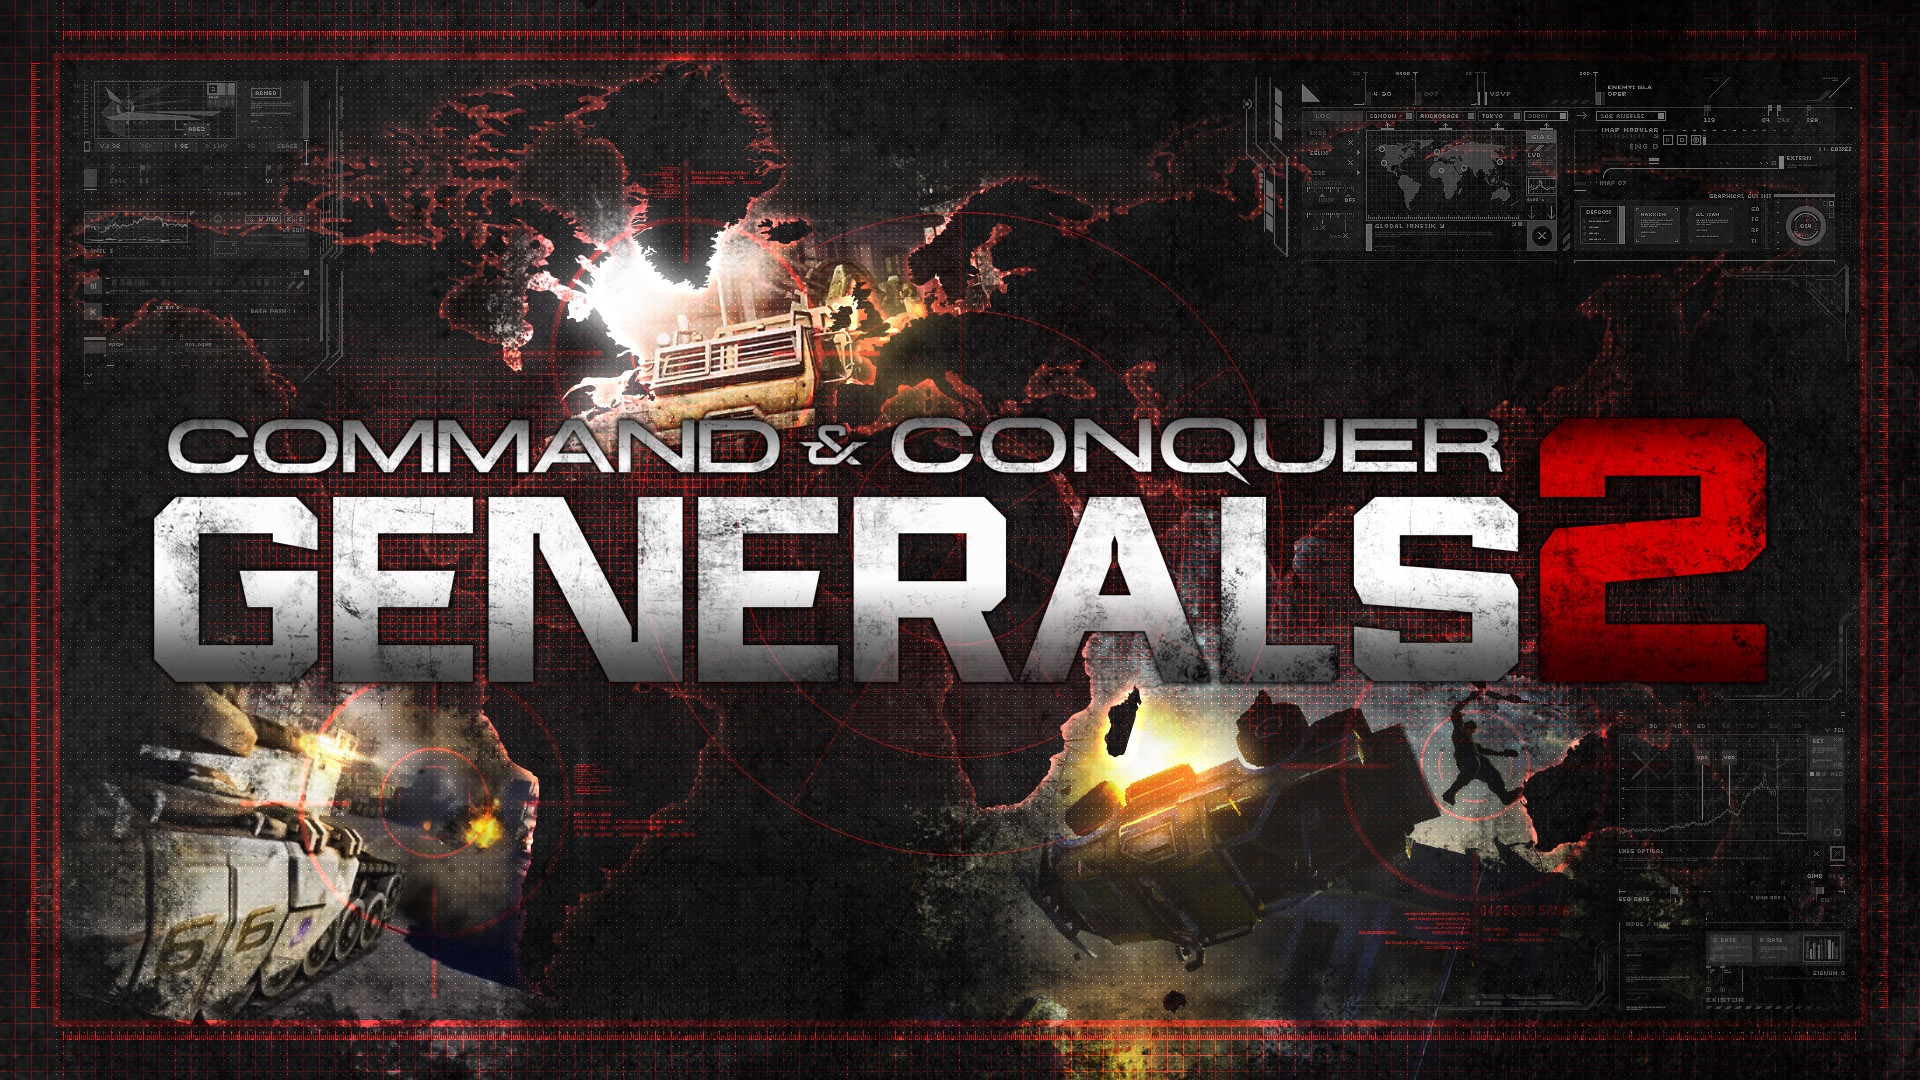 Mand And Conquer Generals Wallpaper Widescreen